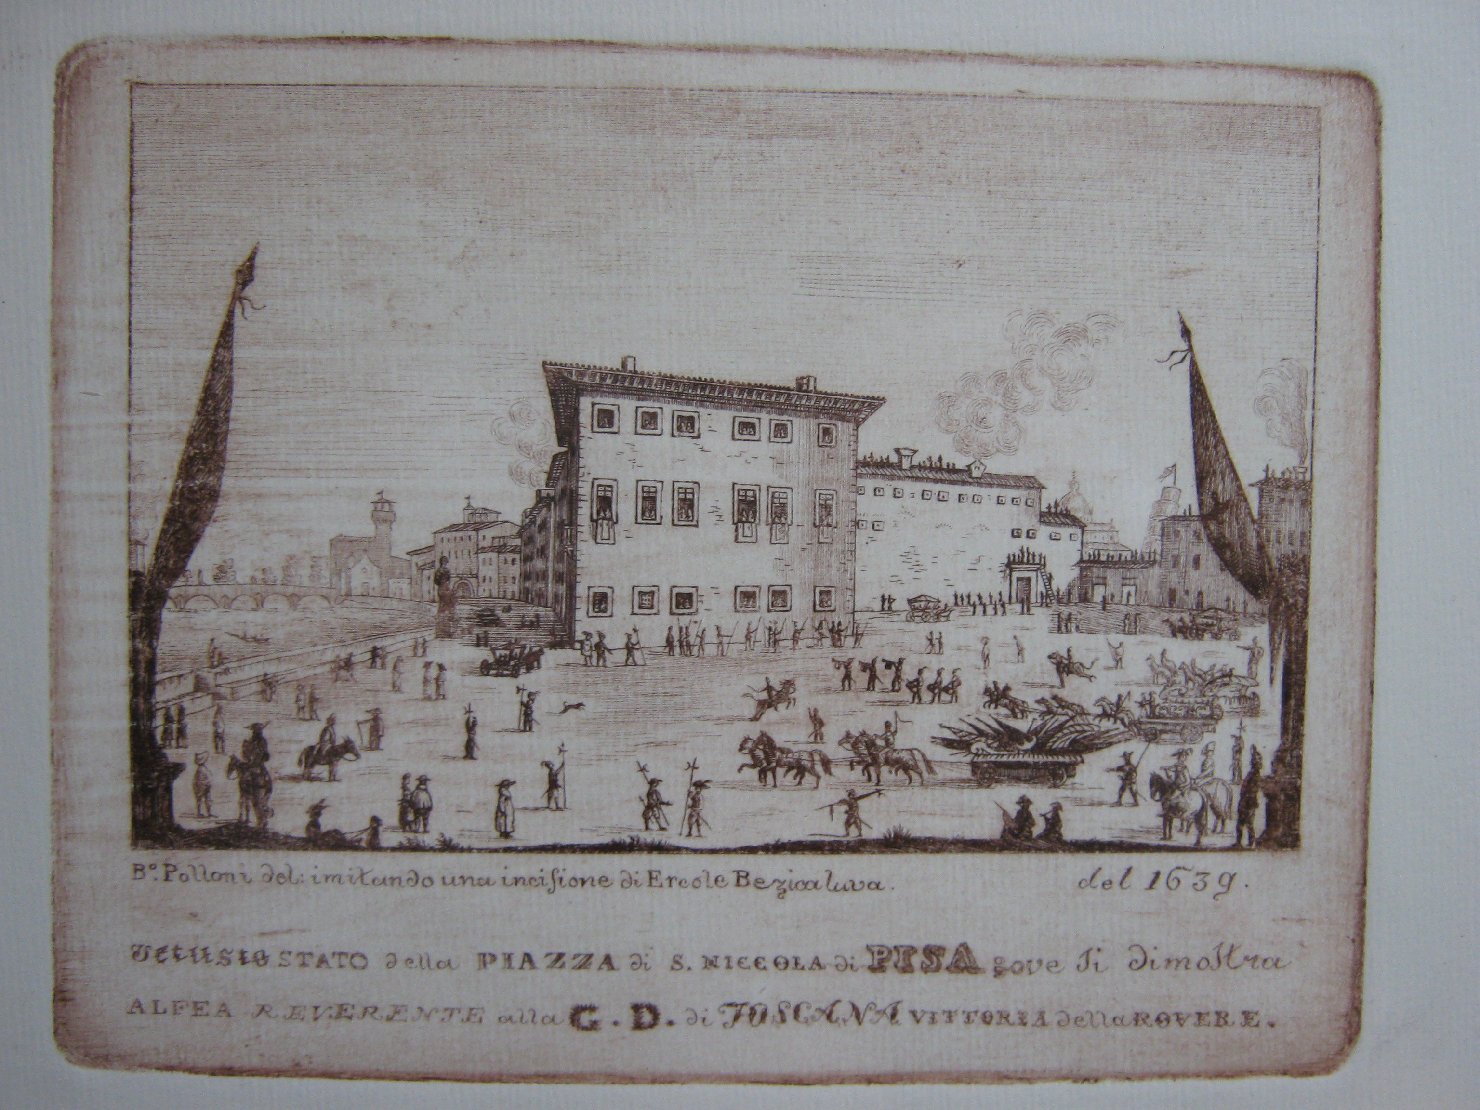 Vetusto stato della Piazza di S. Nicola di Pisa, veduta di città (stampa, frammento) di Polloni Bartolomeo (secondo quarto sec. XIX)